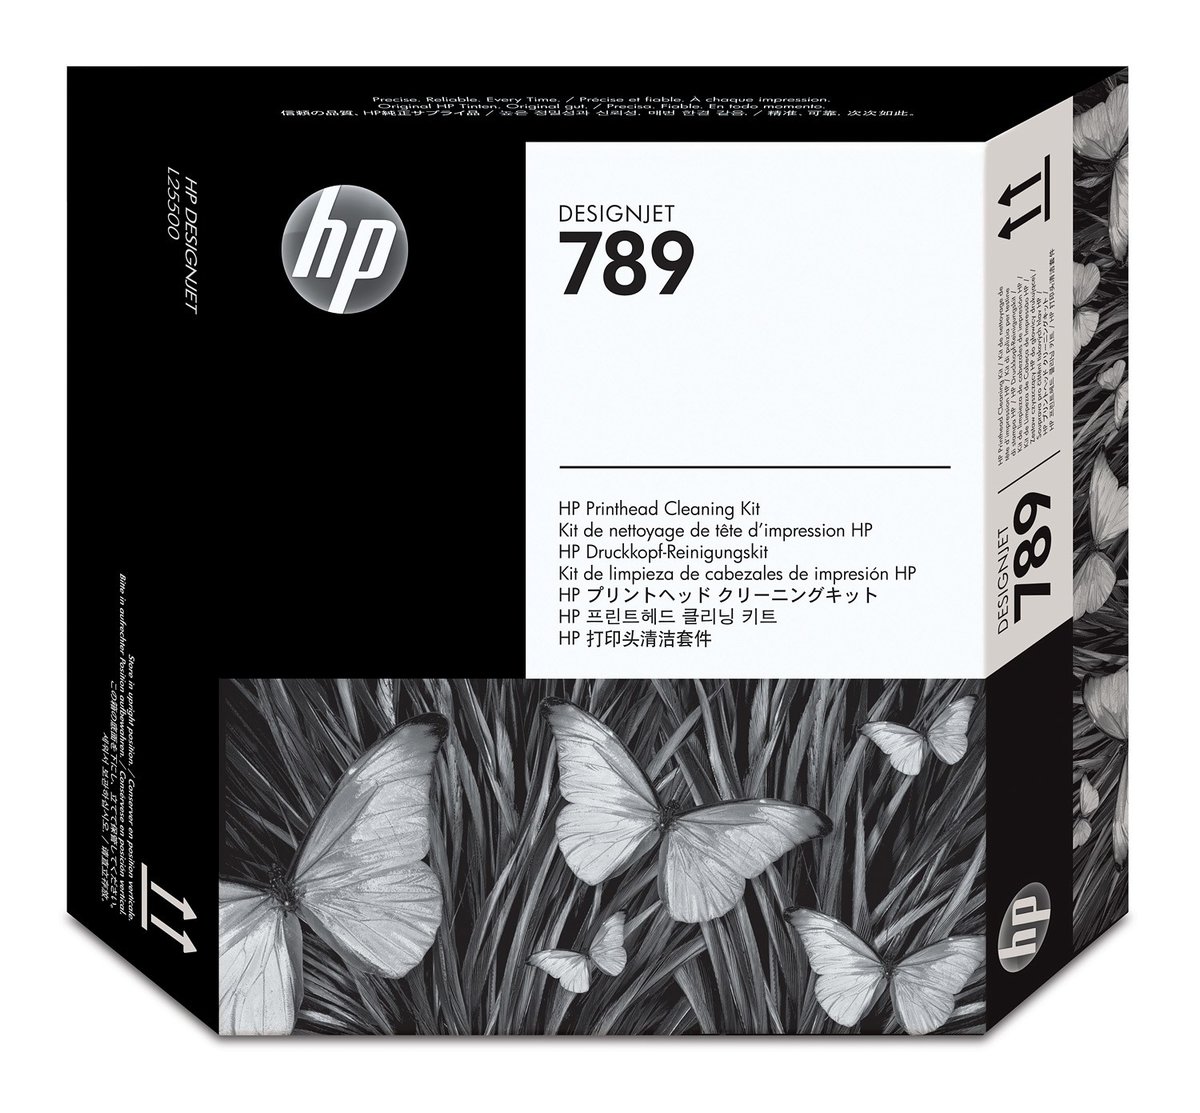 HP 789 Designjet Printhead Cleaning Kit